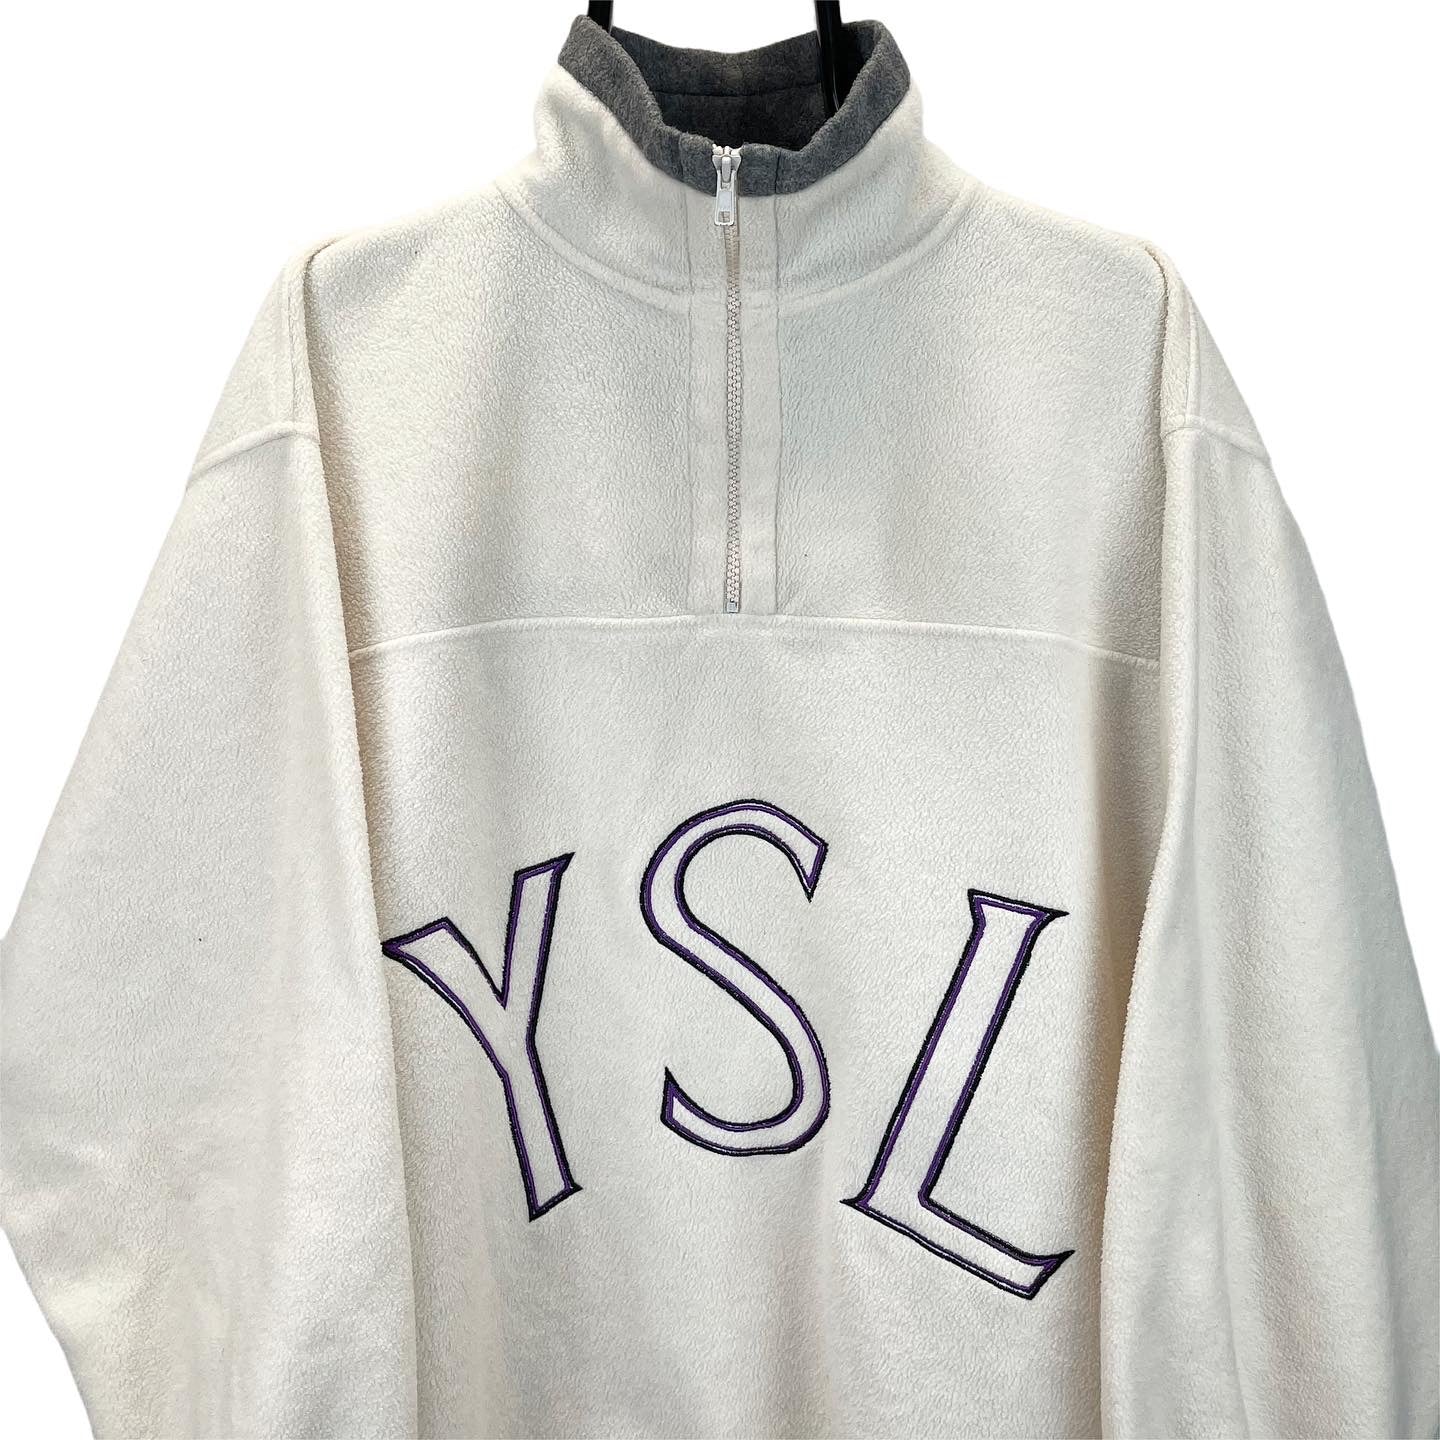 Vintage YSL Spellout 1/4 Zip Fleece in Cream & Purple - Men's XL/Women's XXL